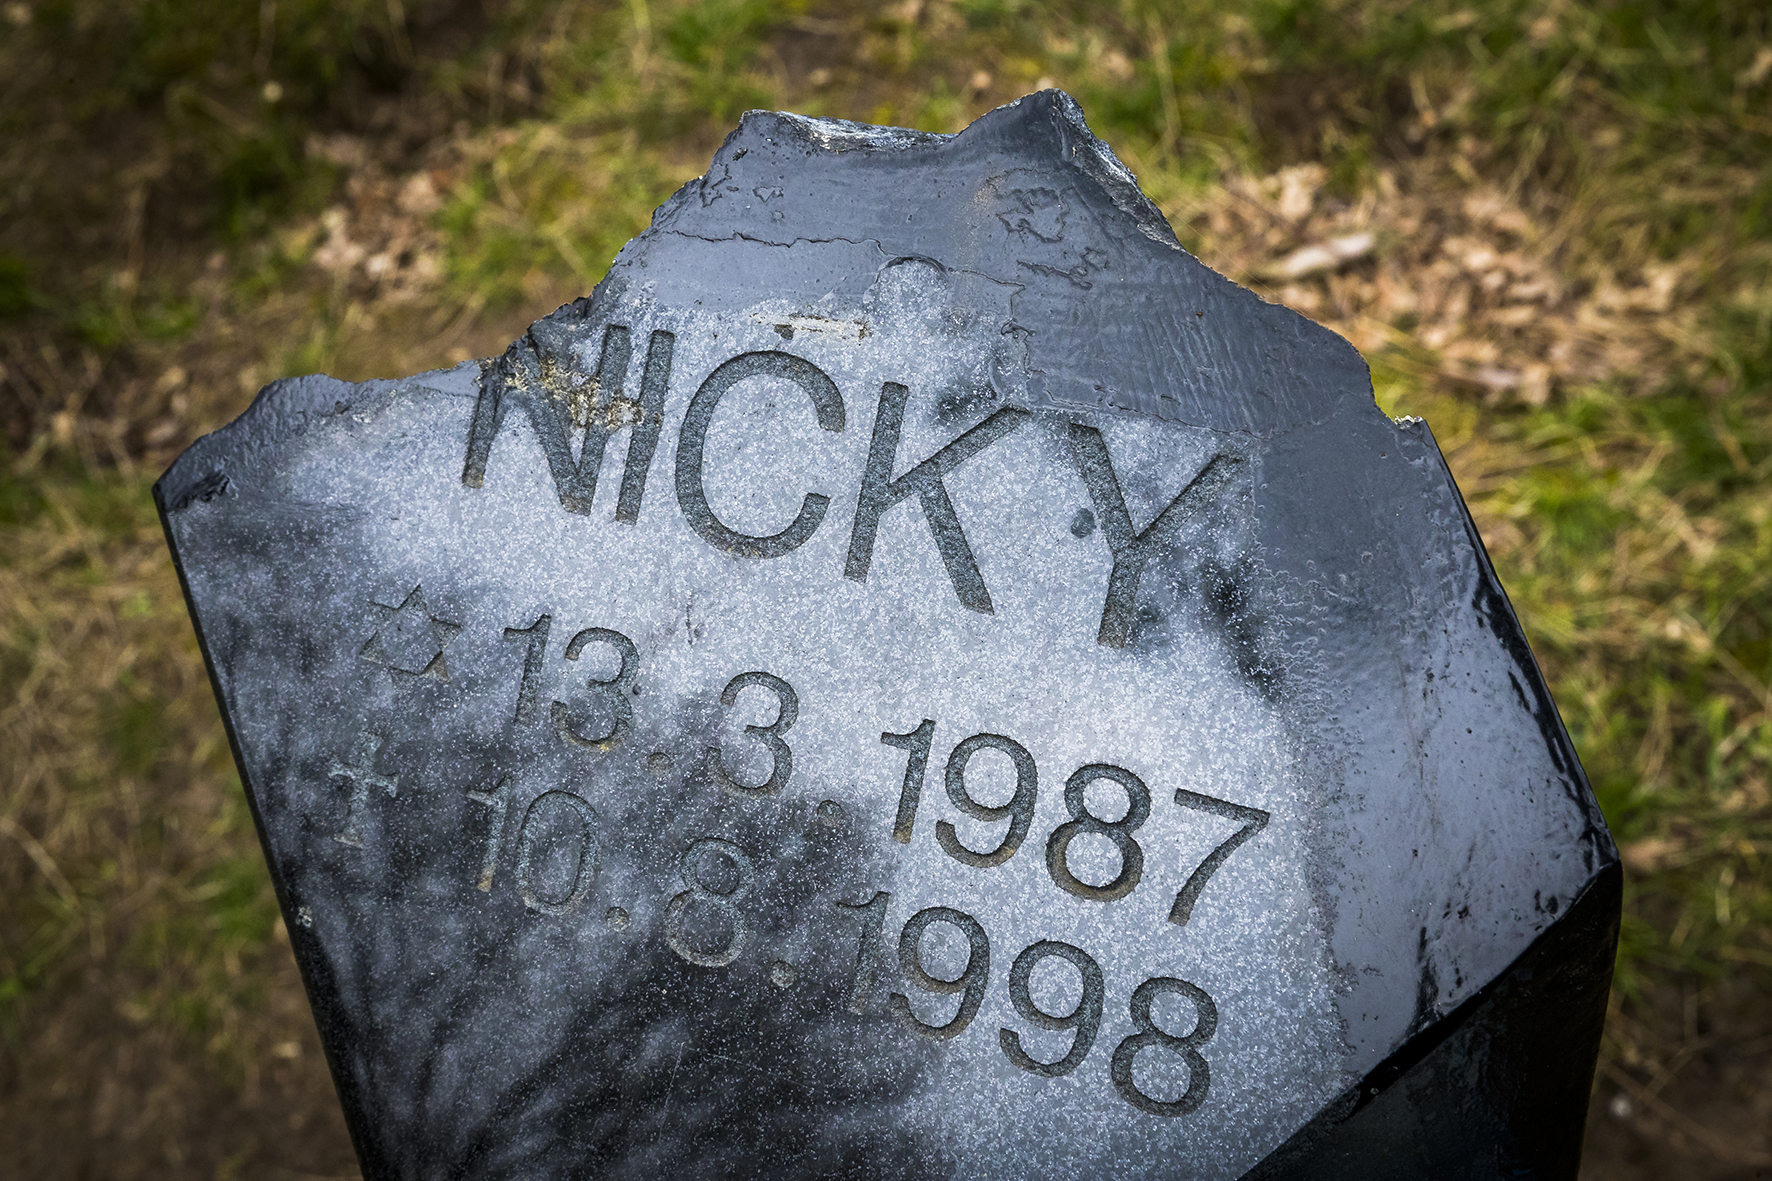 De gedenksteen voor Nicky Verstappen op de Brunssummerheide